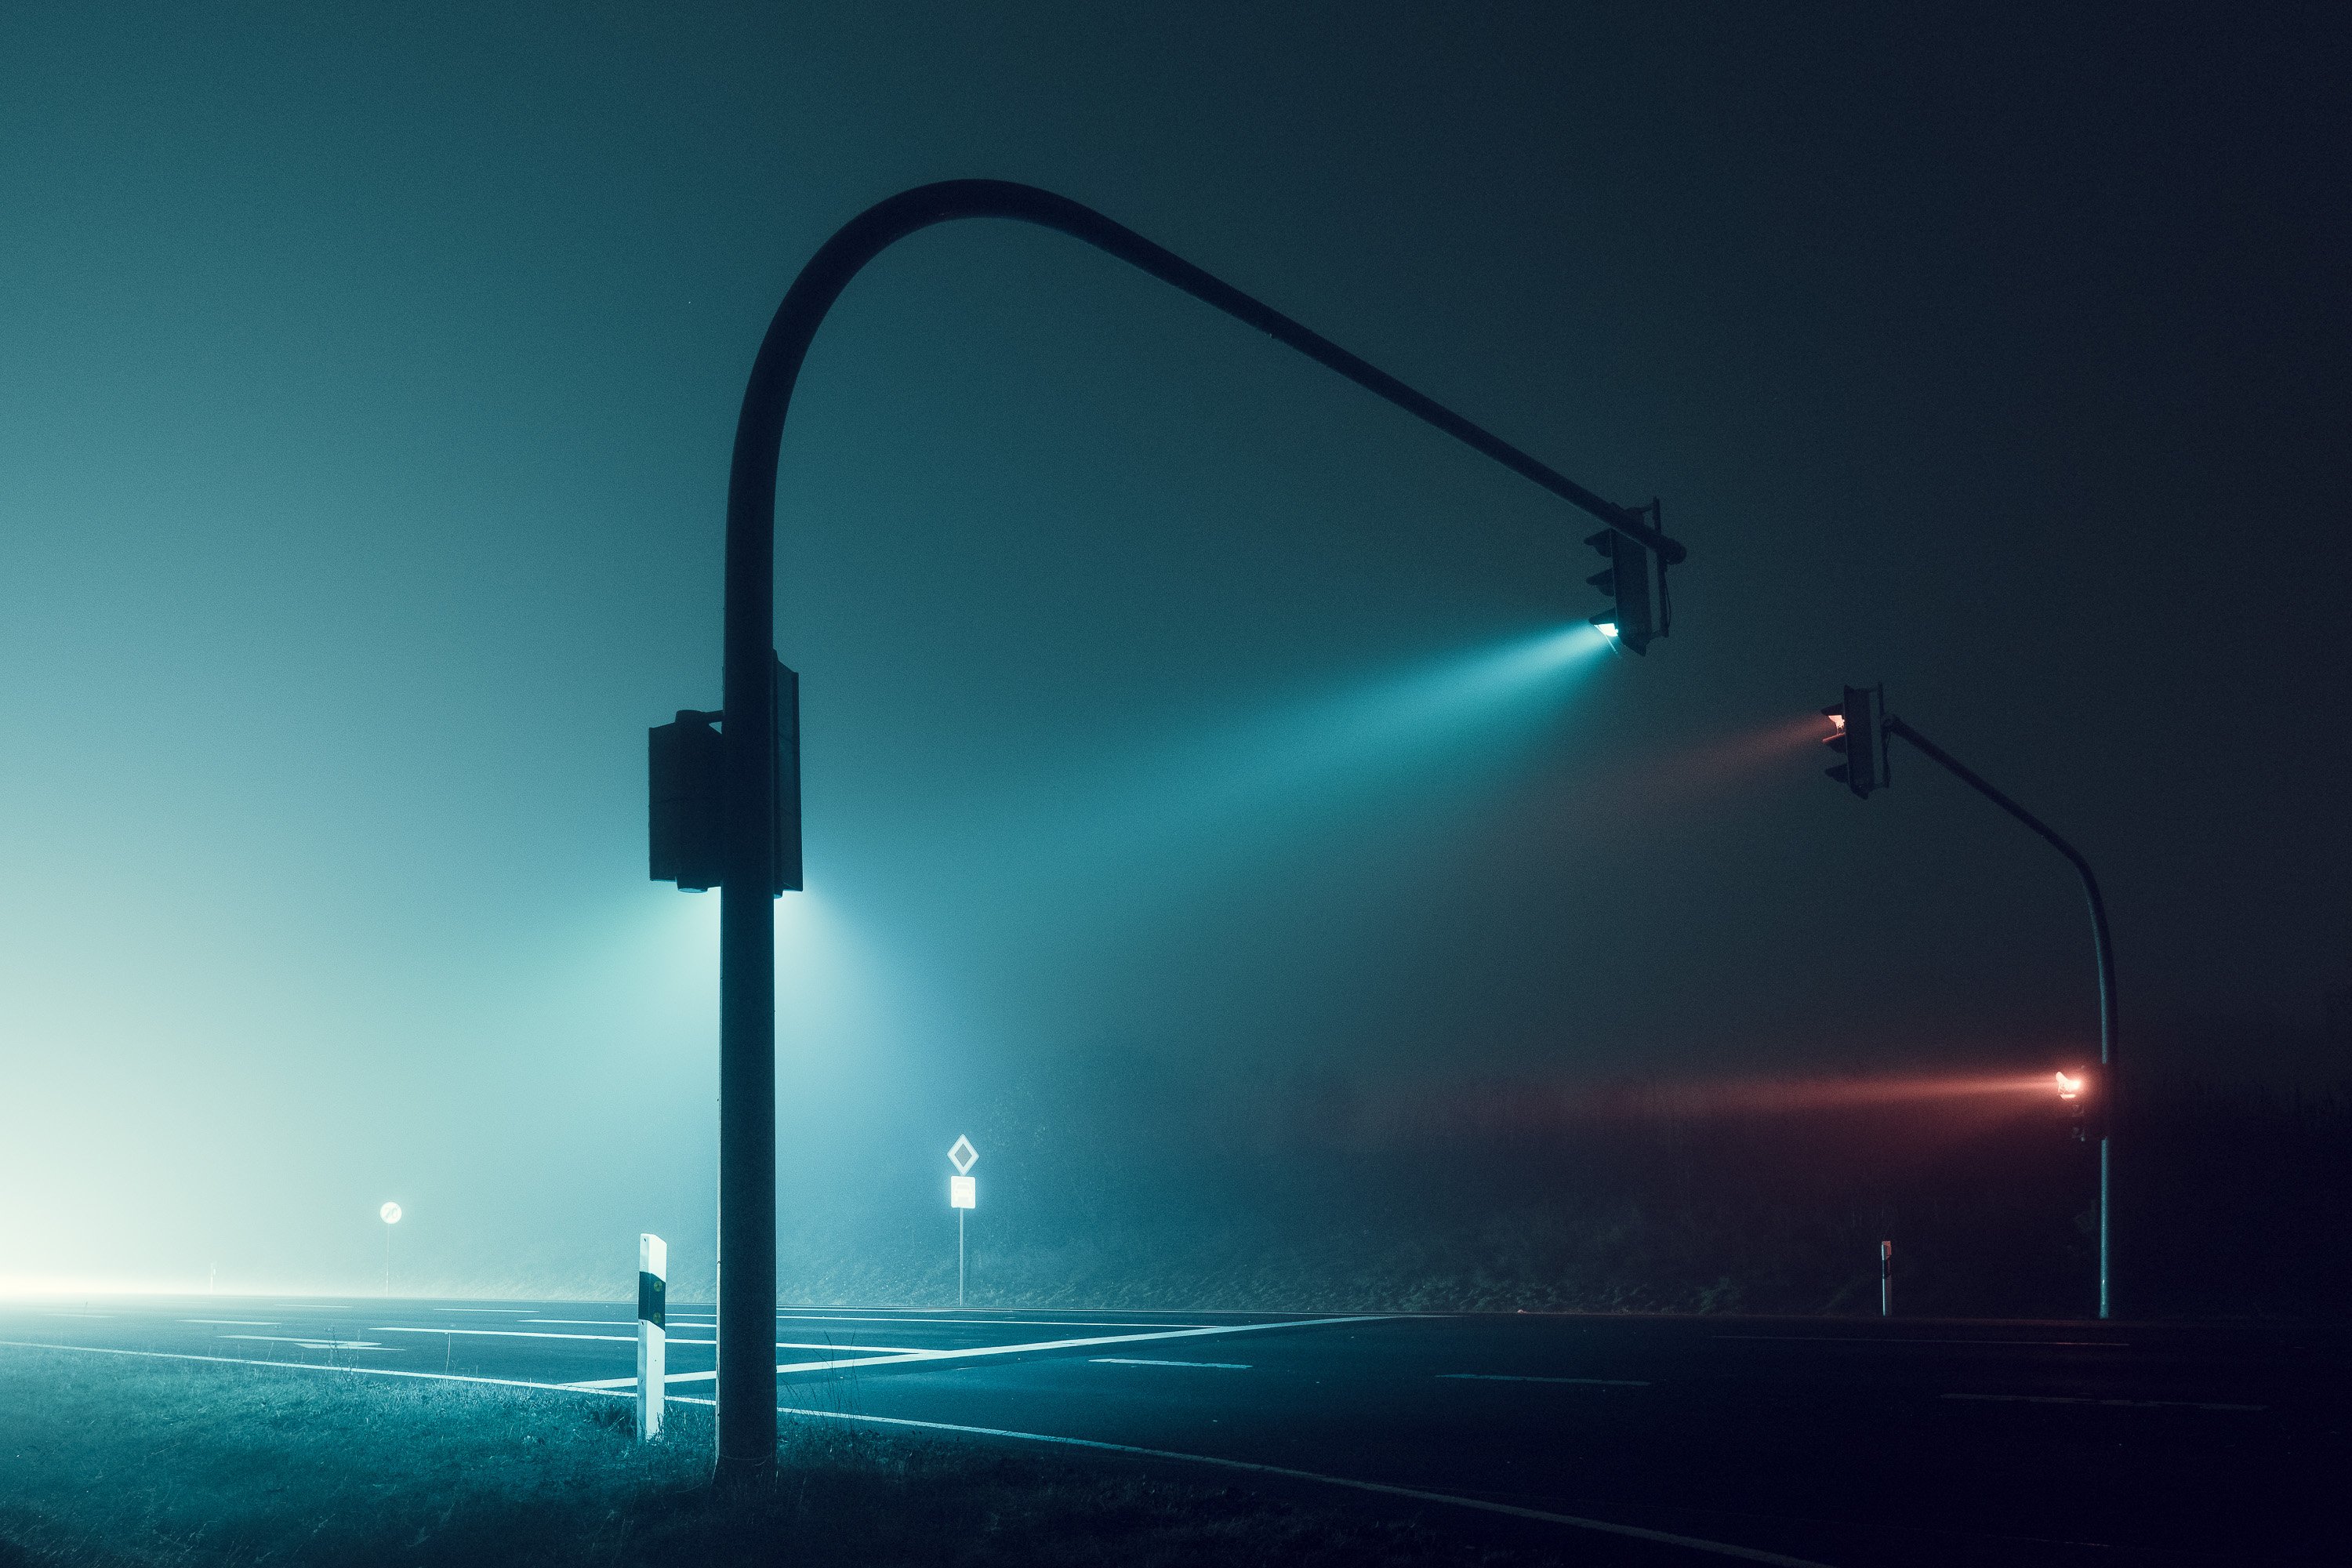 Night posting. Атмосферное освещение. Светофор в тумане. Дорожное освещение. Уличное освещение.